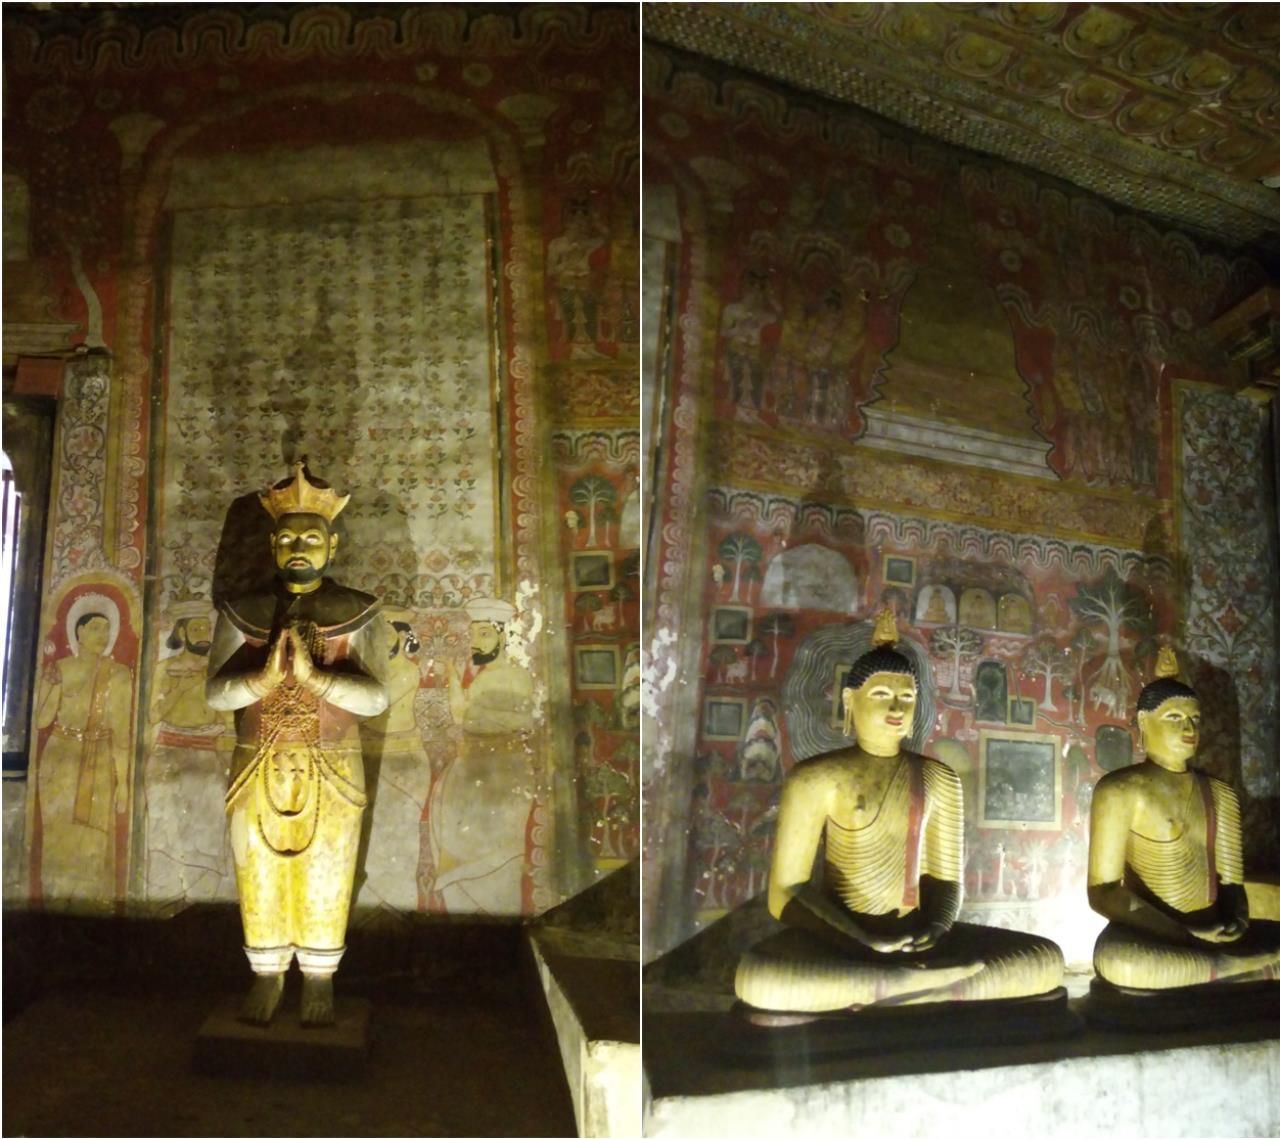 Следующая пещера Маха Алут Вихарая (Великий Новый Храм). Здесь находятся 56 статуй, среди которых спящий Будда, 13 Будд в позе лотоса и 42 стоящих монаха, окружающих скульптуру Будды в медитации в центре зала. - 2017 ШРИ-ЛАНКА ДАМБУЛЛА – КАНДИ